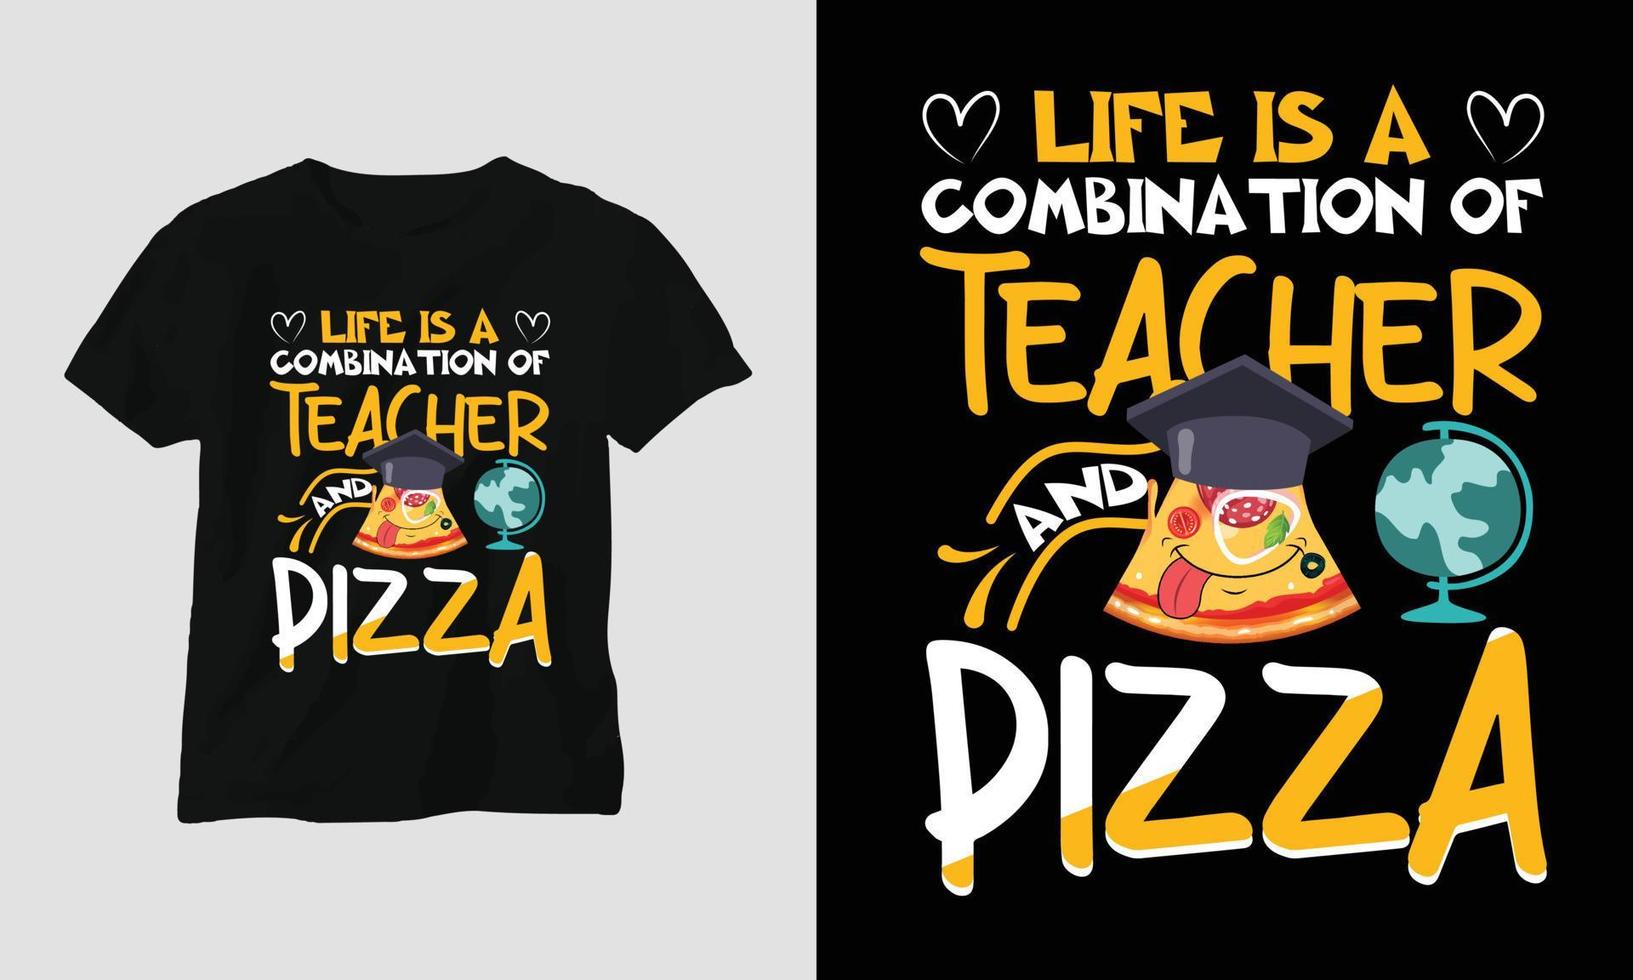 la vida es una combinación de maestro y pizza - camiseta del día del maestro vector